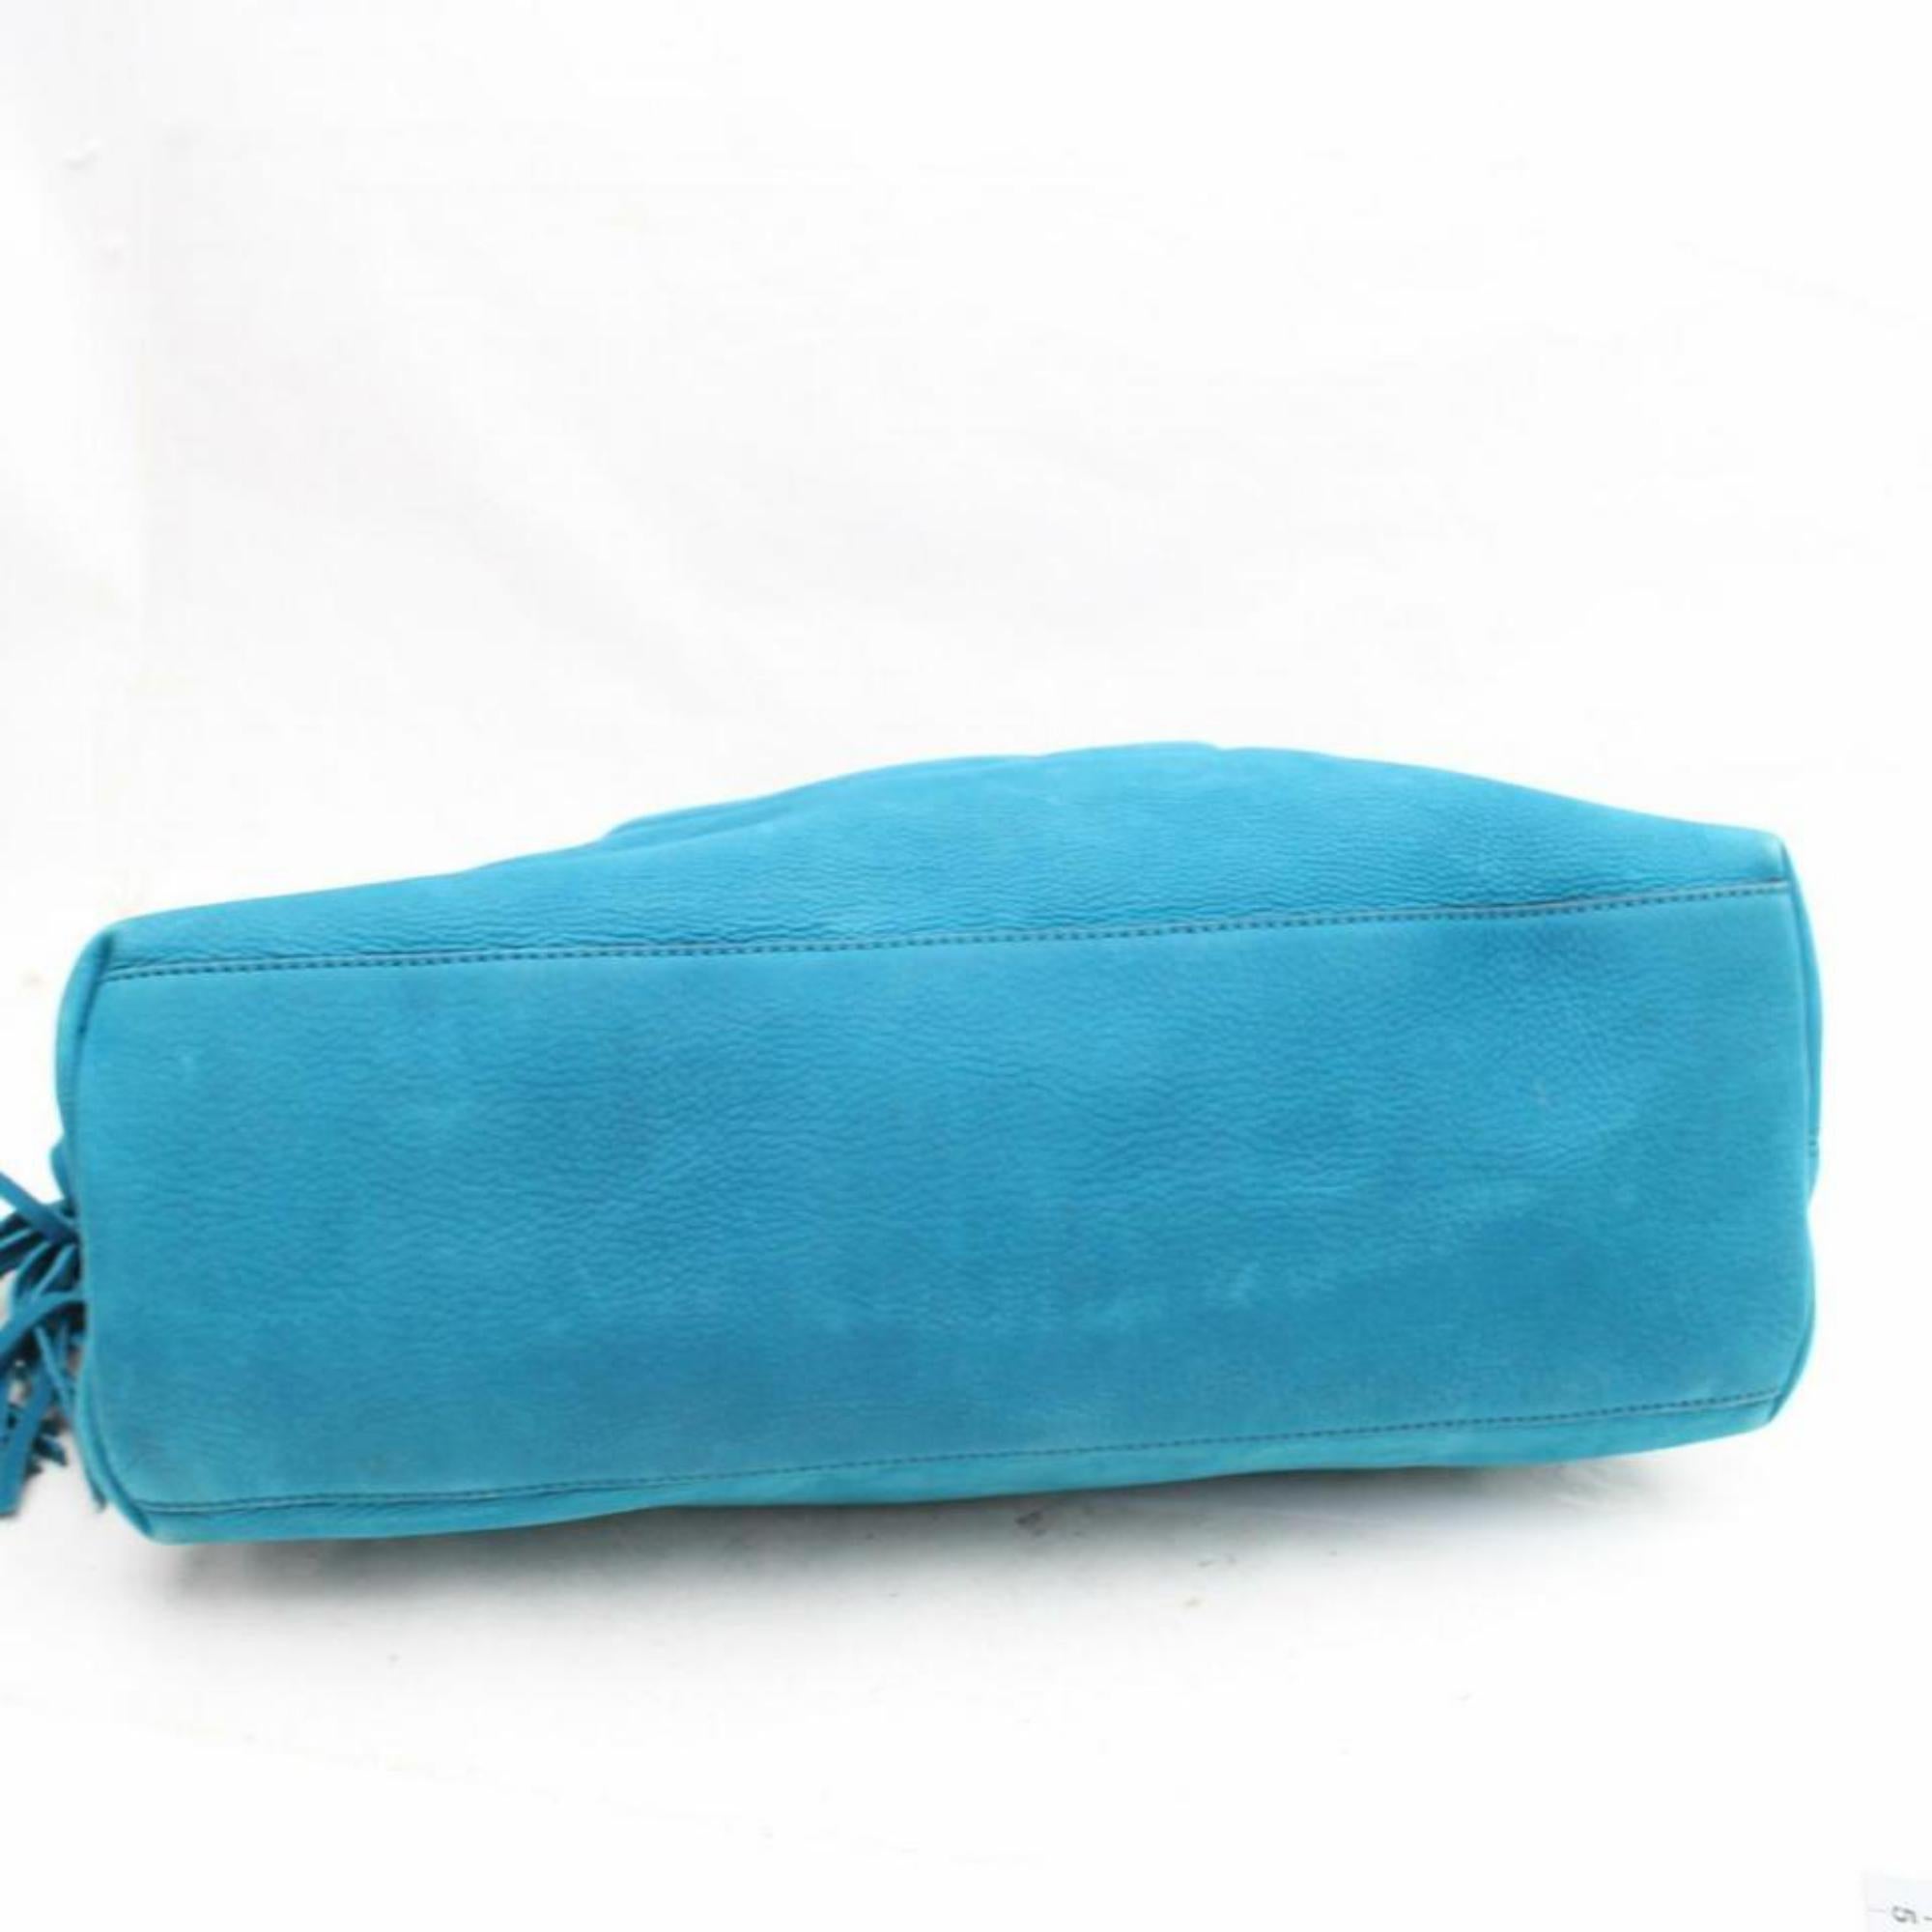 Gucci Soho Fringe Tassel Chain Tote 869786 Blue Nubuck Leather Shoulder Bag For Sale 3